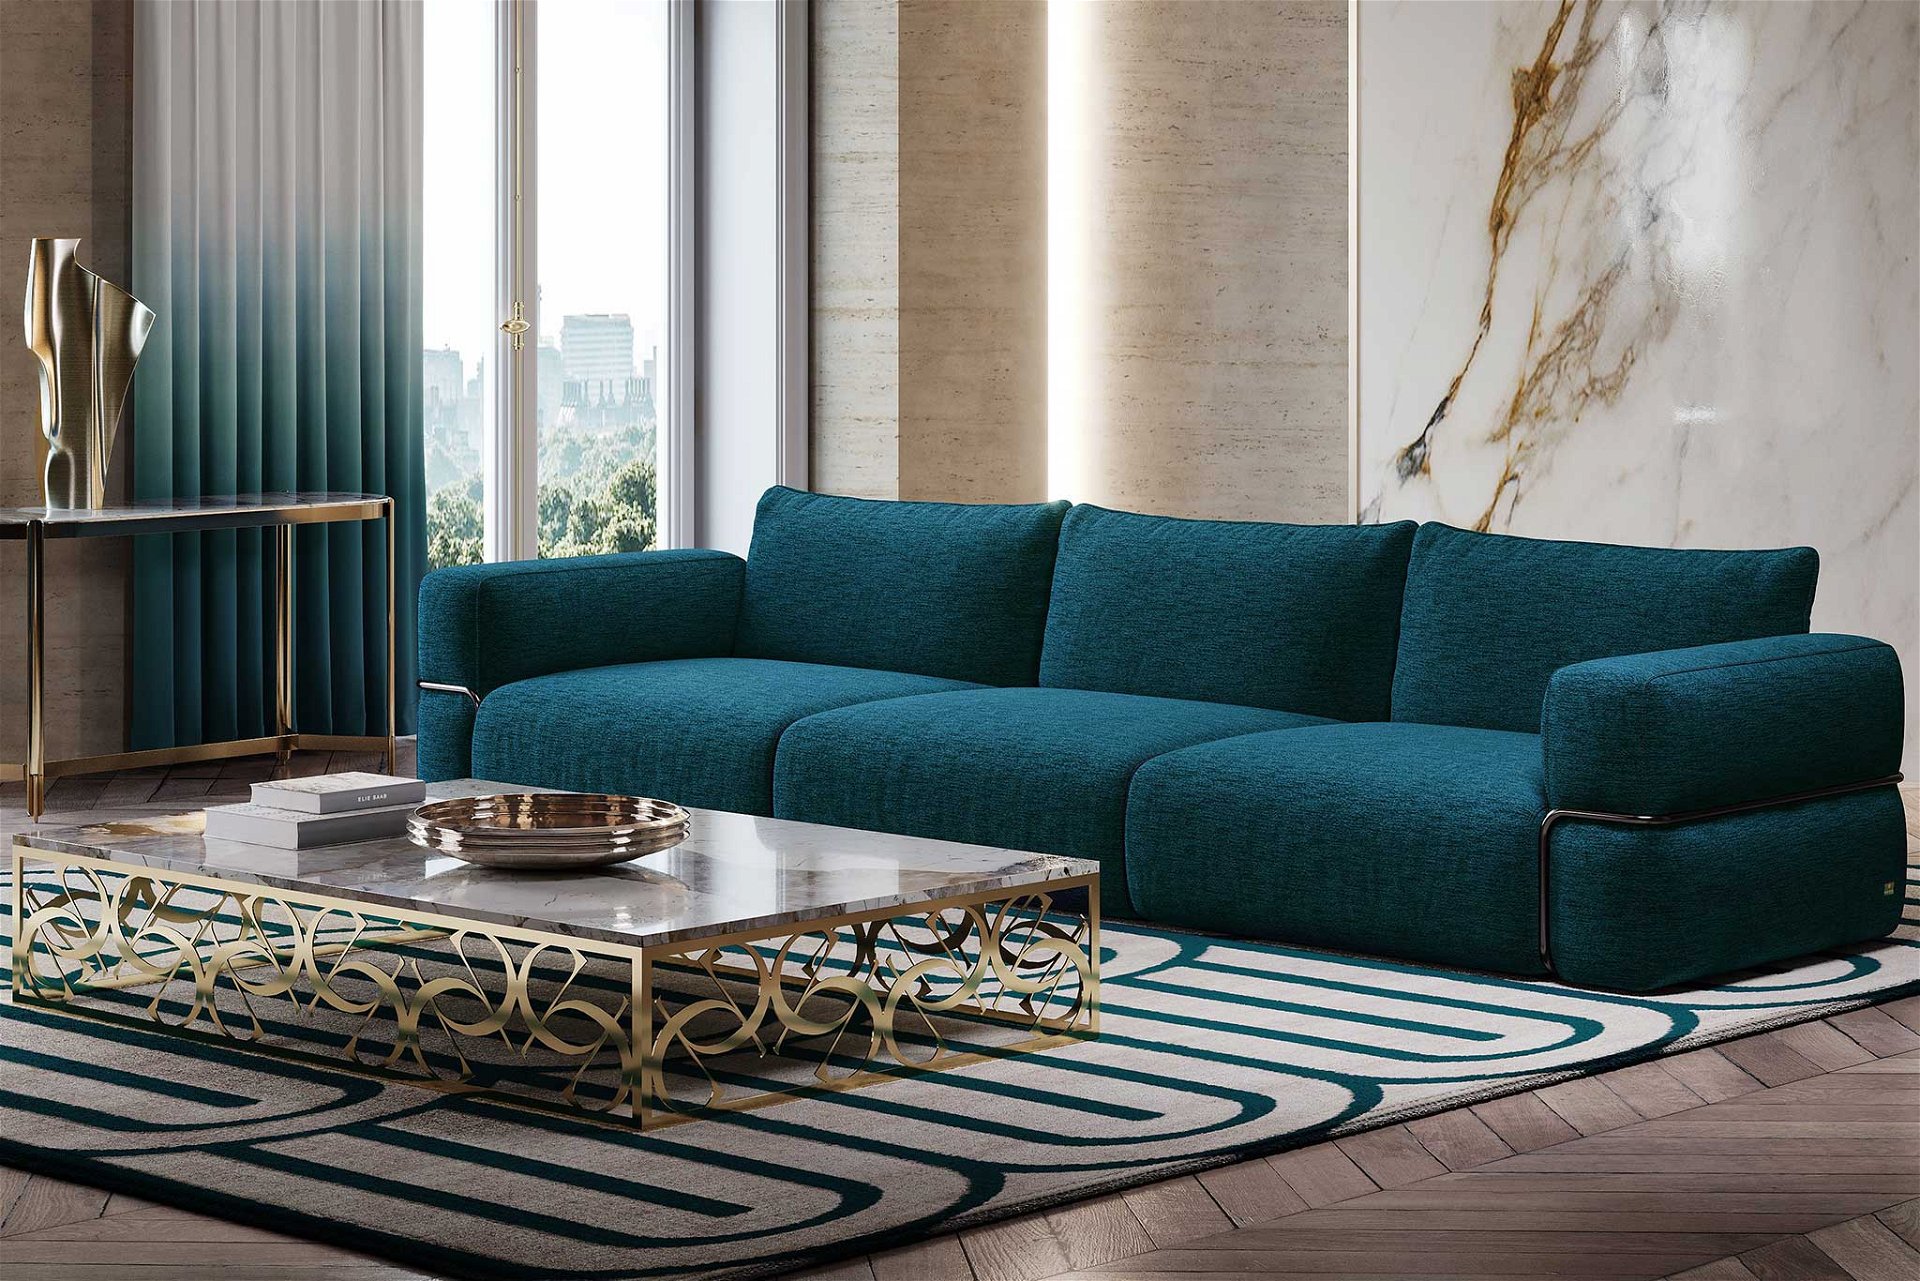 Das Sofa »Byblos« wurde nach einer der ältesten Städte der Welt benannt, welche sich in der Nähe von Elie Saabs Geburtsort Beirut befindet. 